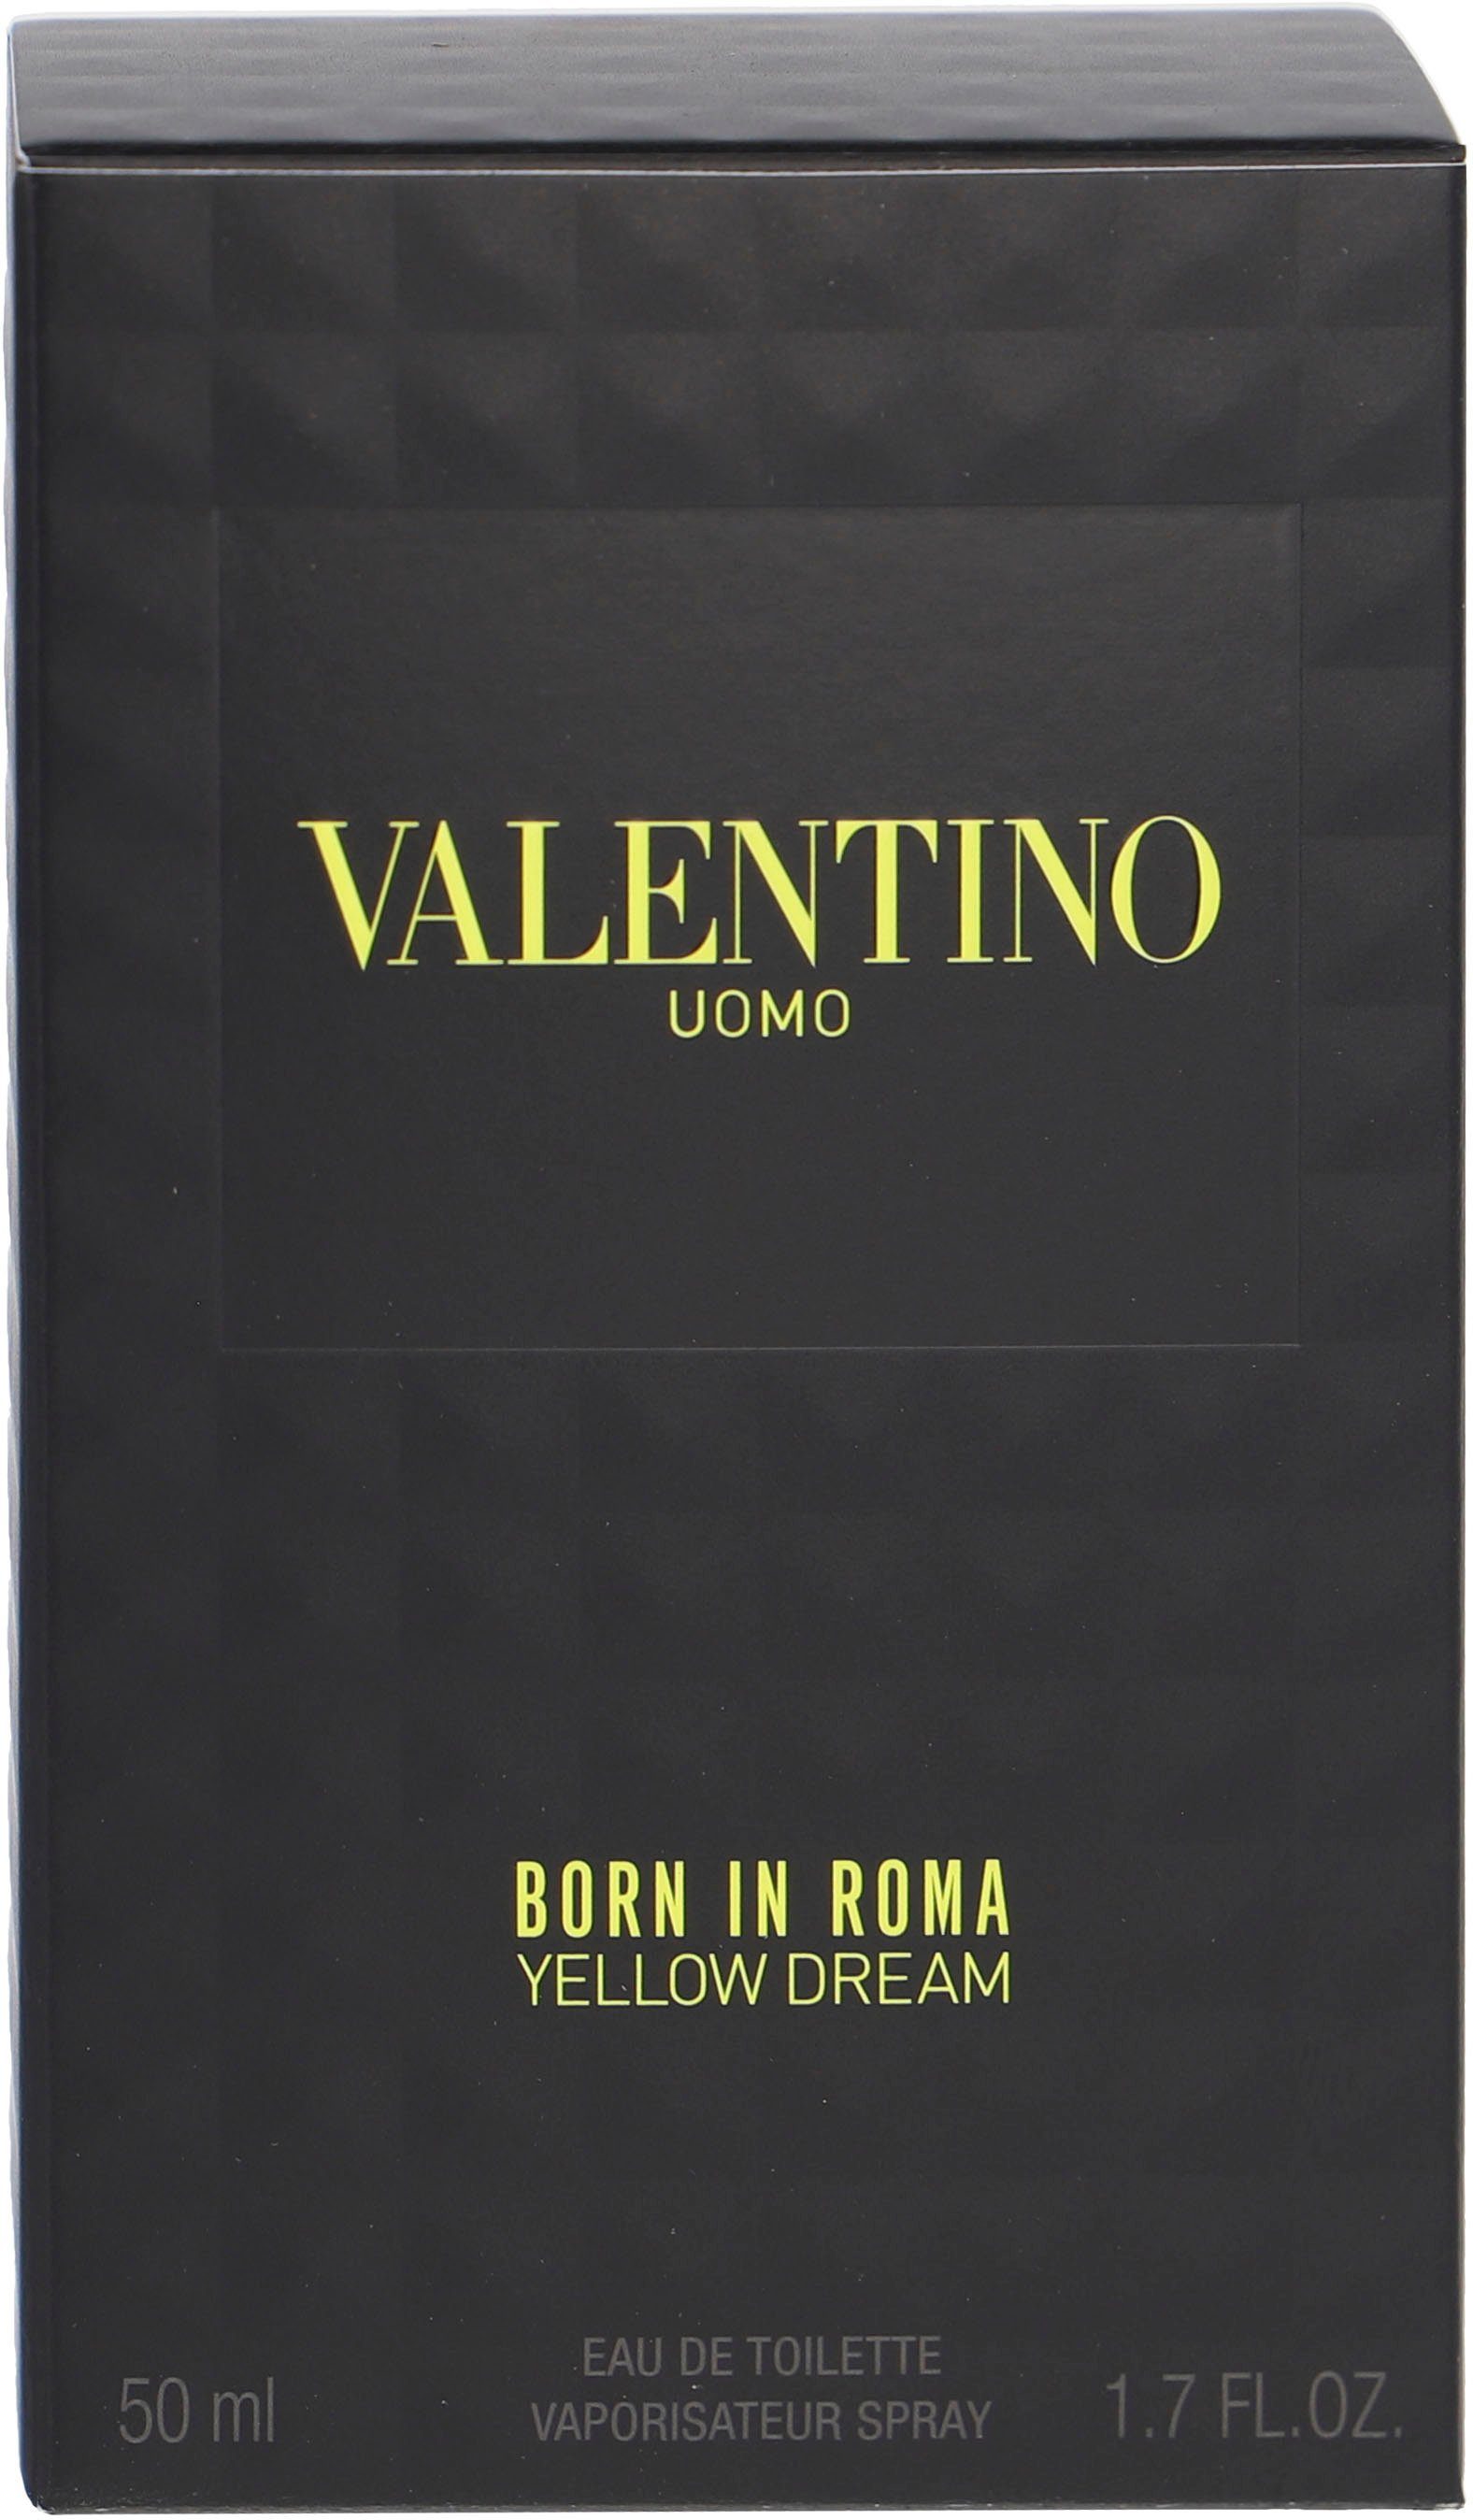 de Uomo Valentino Yellow Toilette Eau Born In Dream Roma